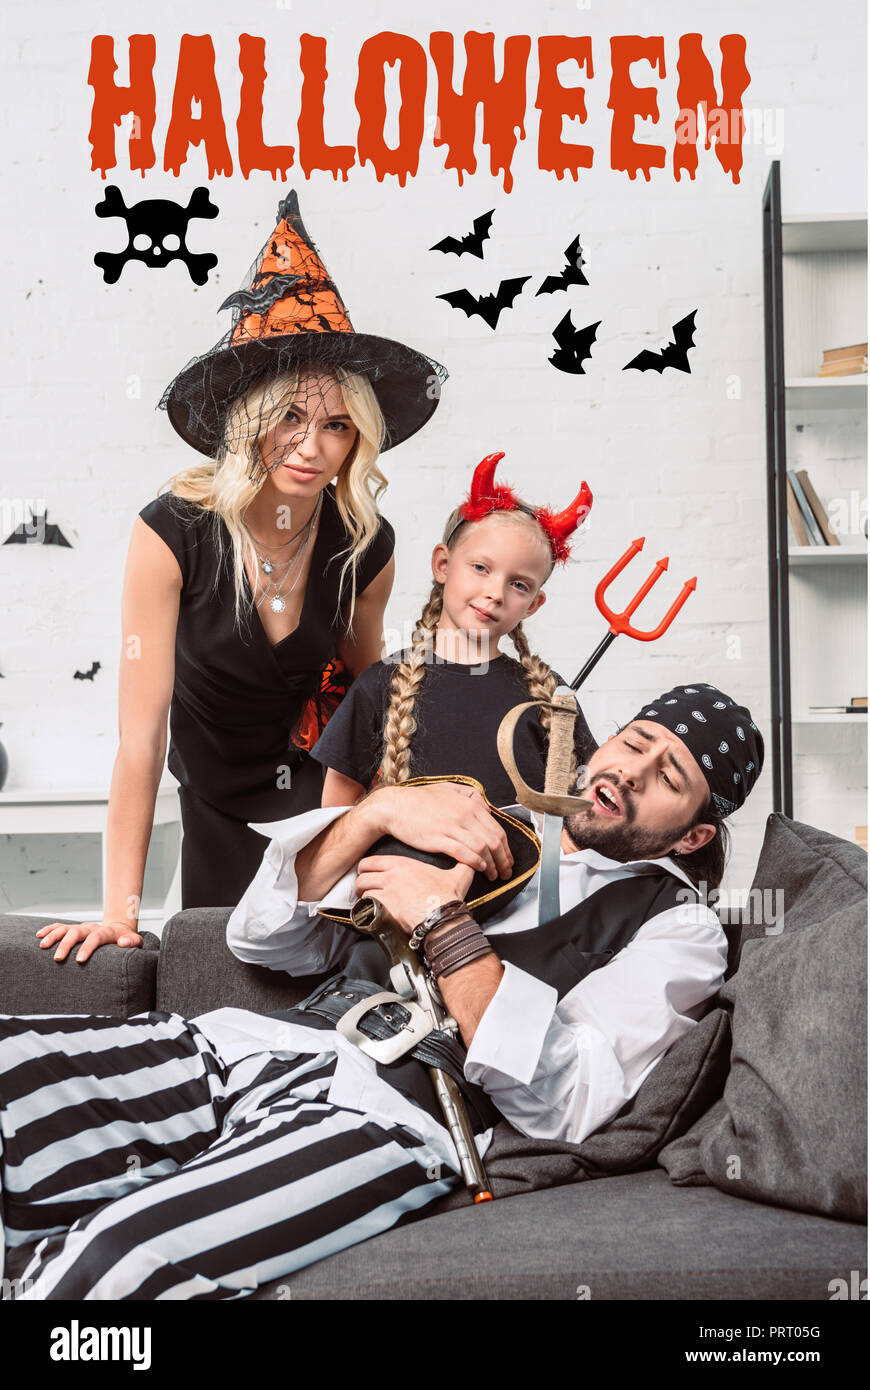 Porträt der Familie in Halloween Kostüme zu Hause mit 'Halloween'-Schriftzug Stockfoto